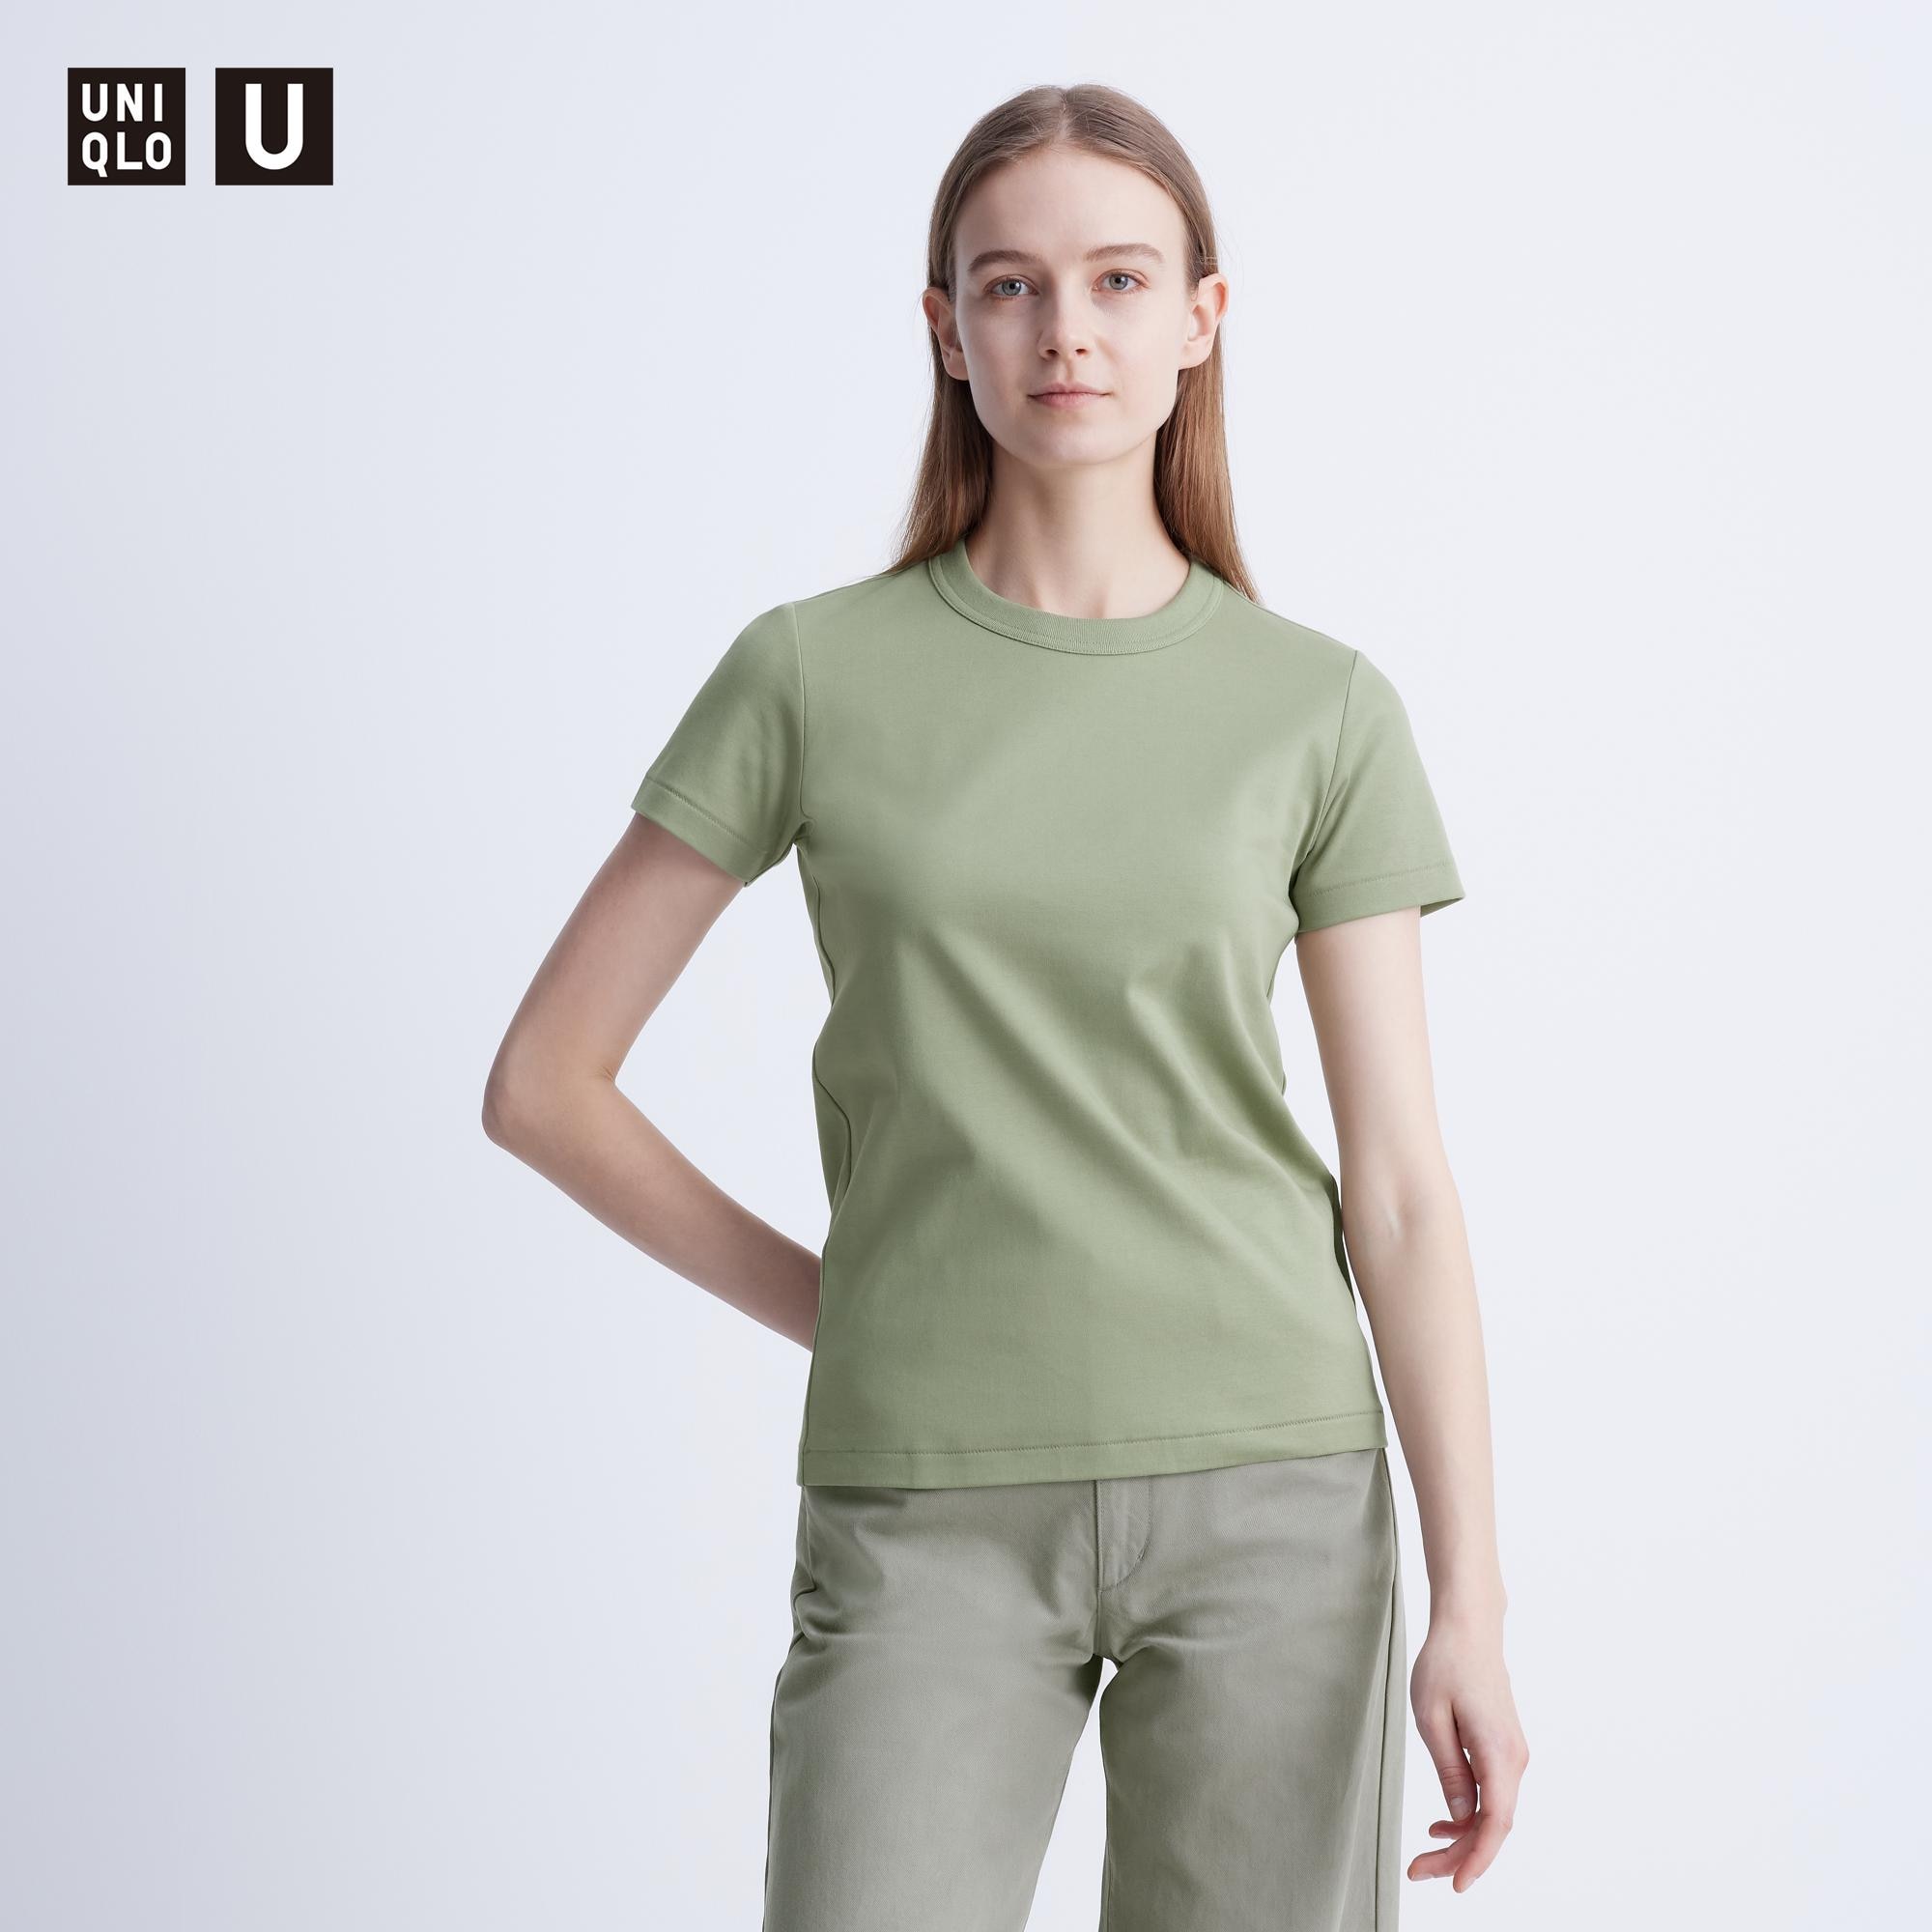 ニットtシャツ インナーの関連商品 | ユニクロ